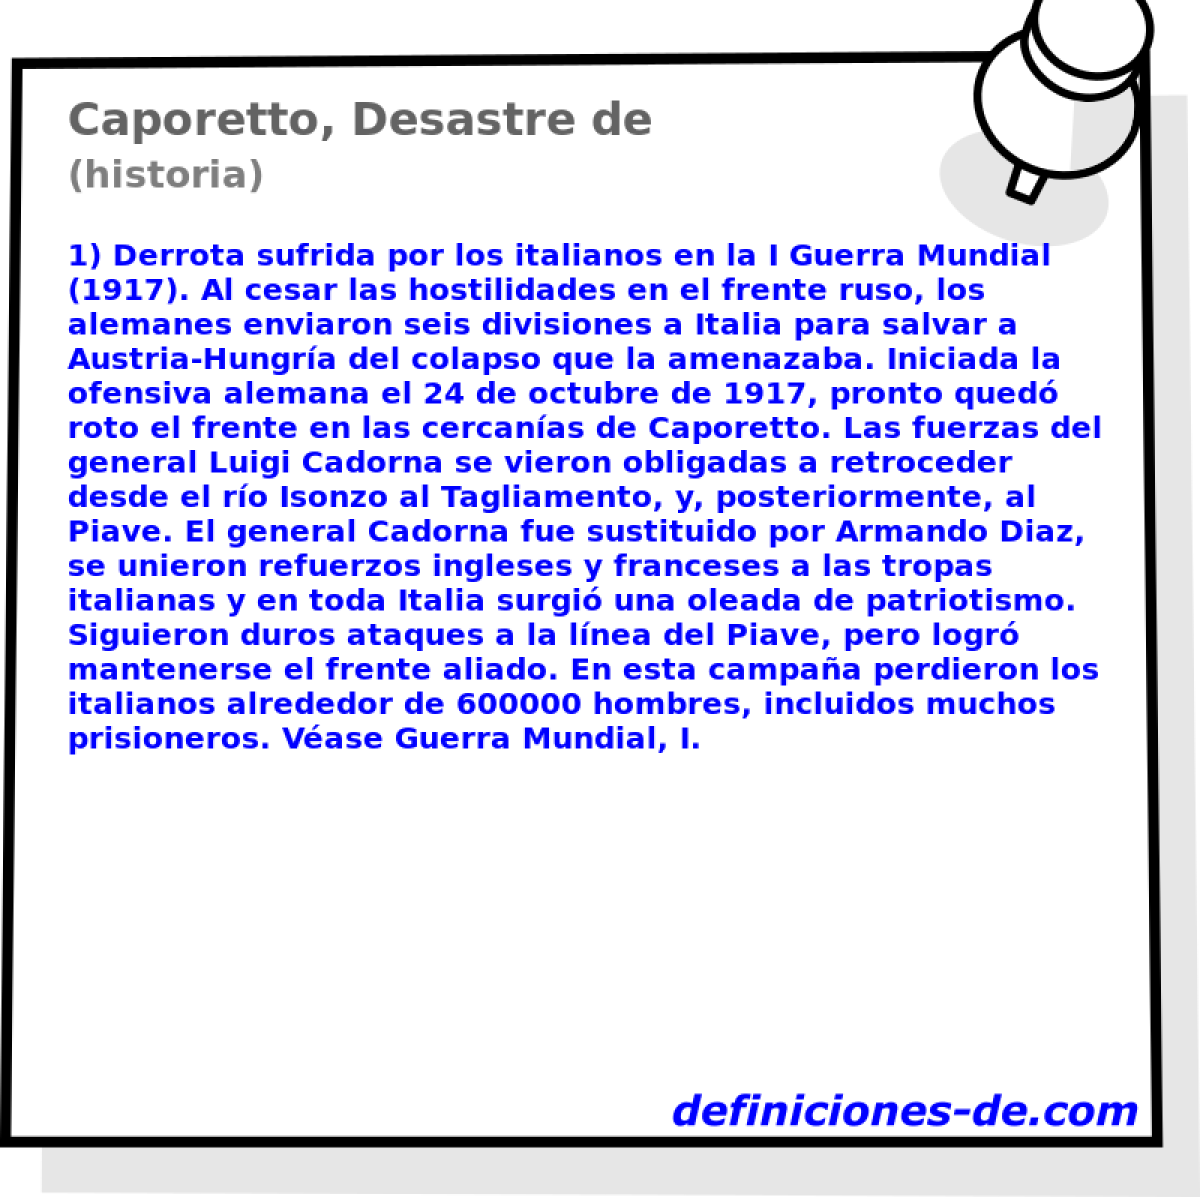 Caporetto, Desastre de (historia)